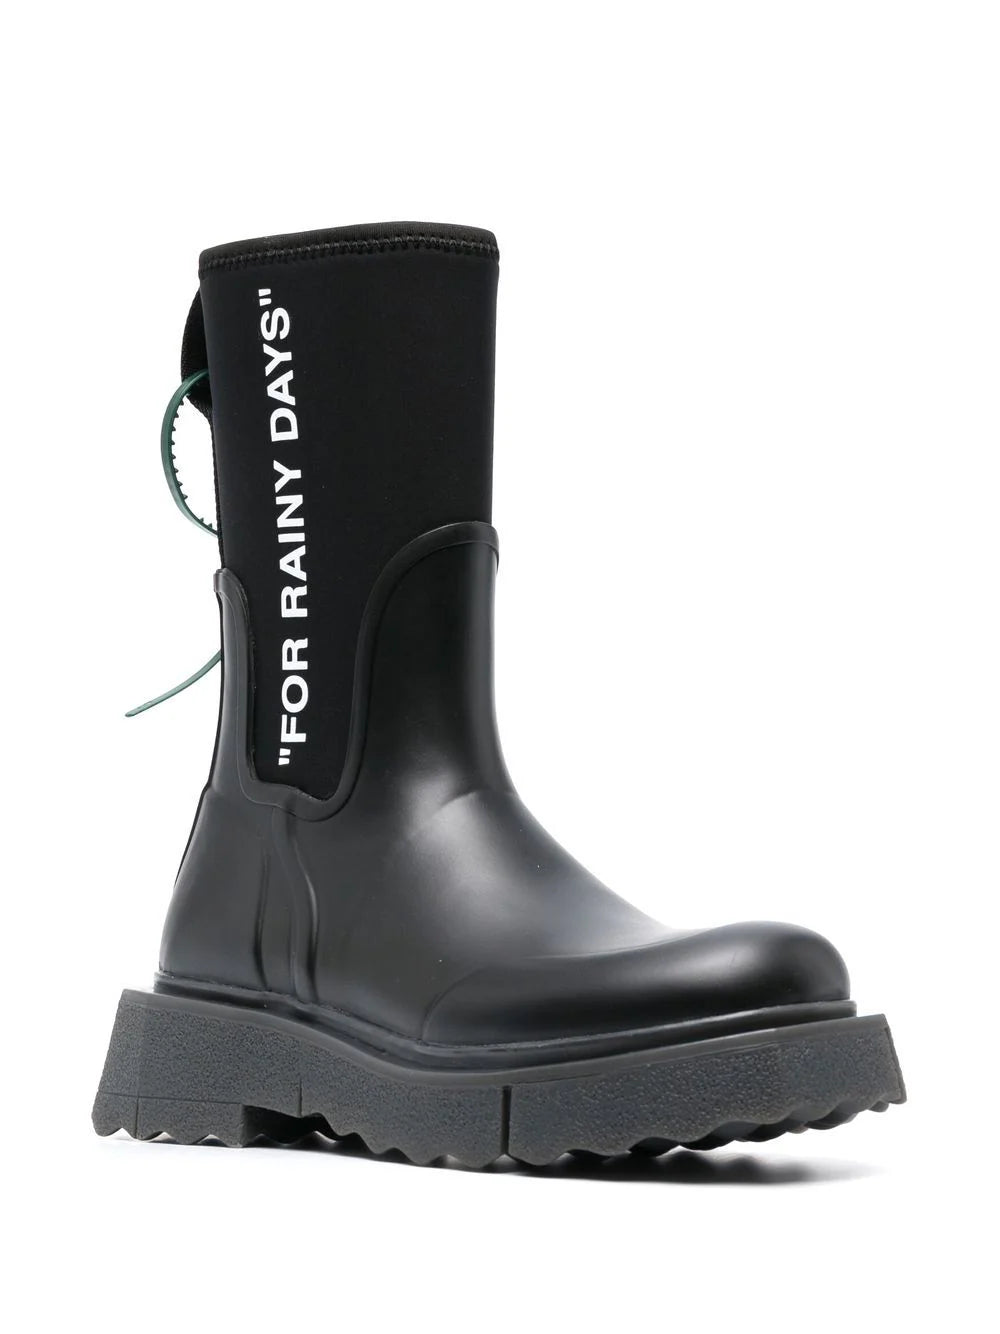 OFF-WHITE WOMEN Sponge Rubber Rain Boots Black/White - MAISONDEFASHION.COM